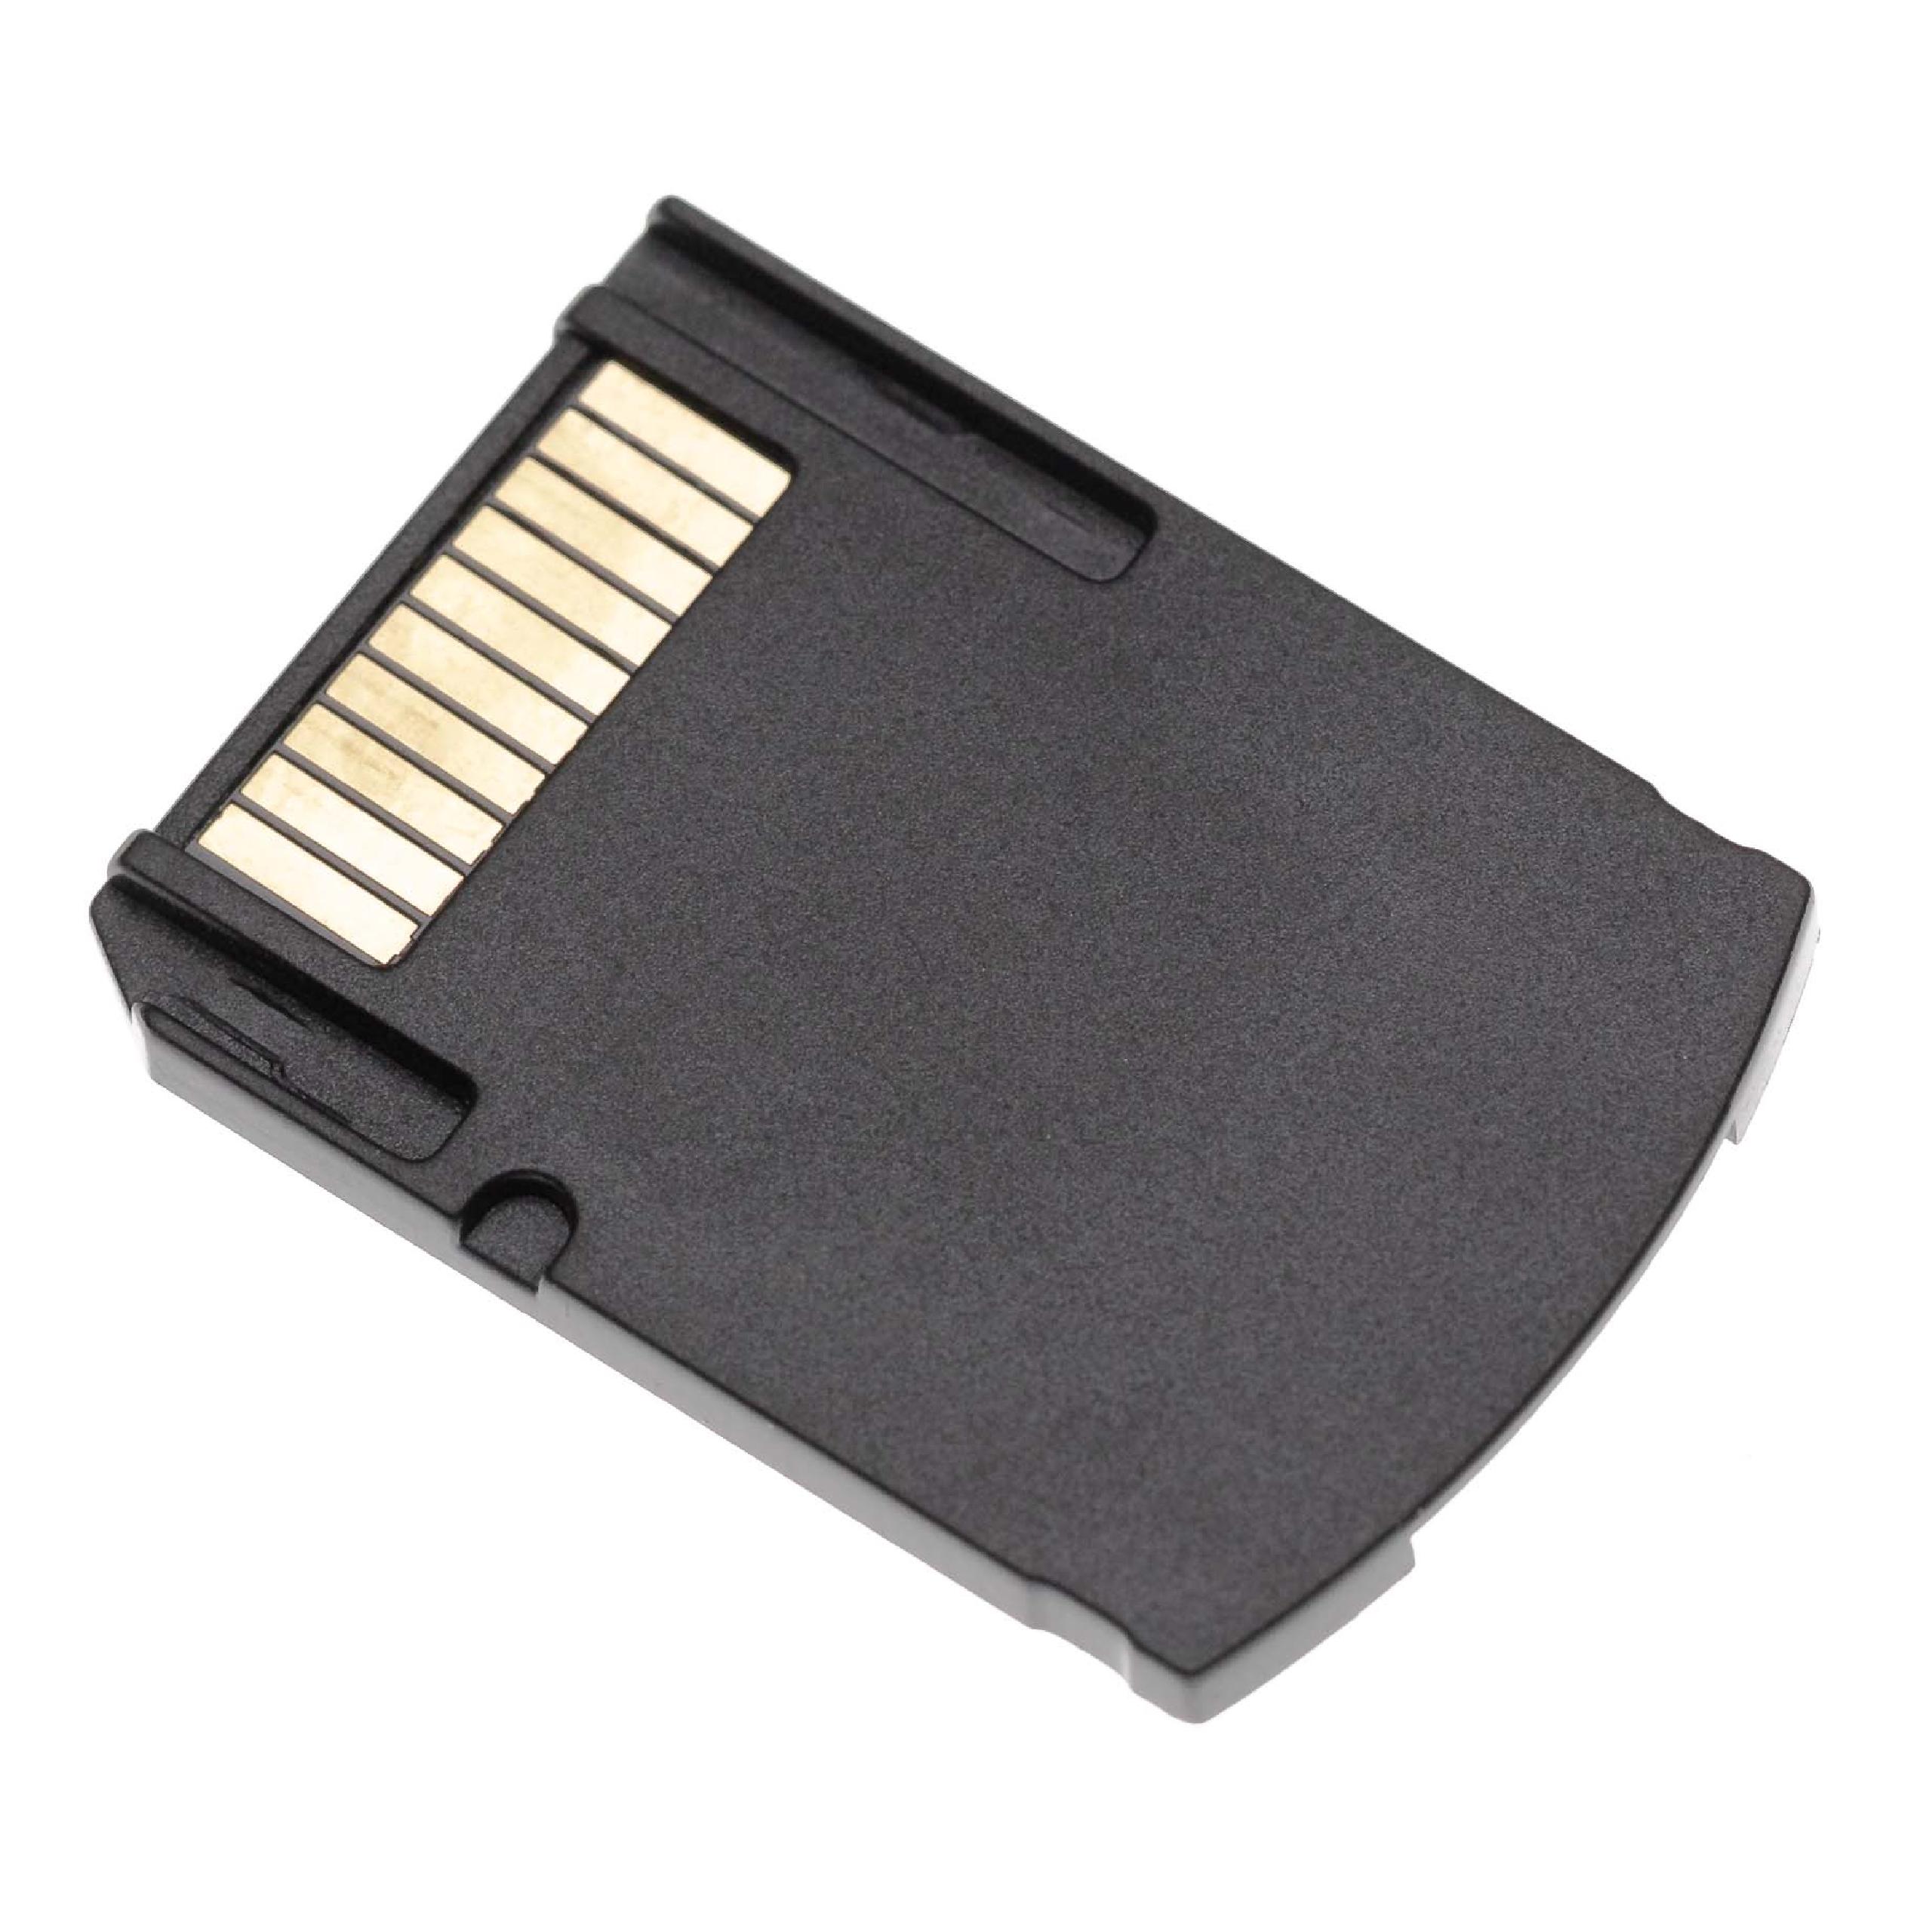 SD Kartenadapter als Ersatz für SD2VITA für PlayStation Spielekonsole - SD Speicherkarten Konverter